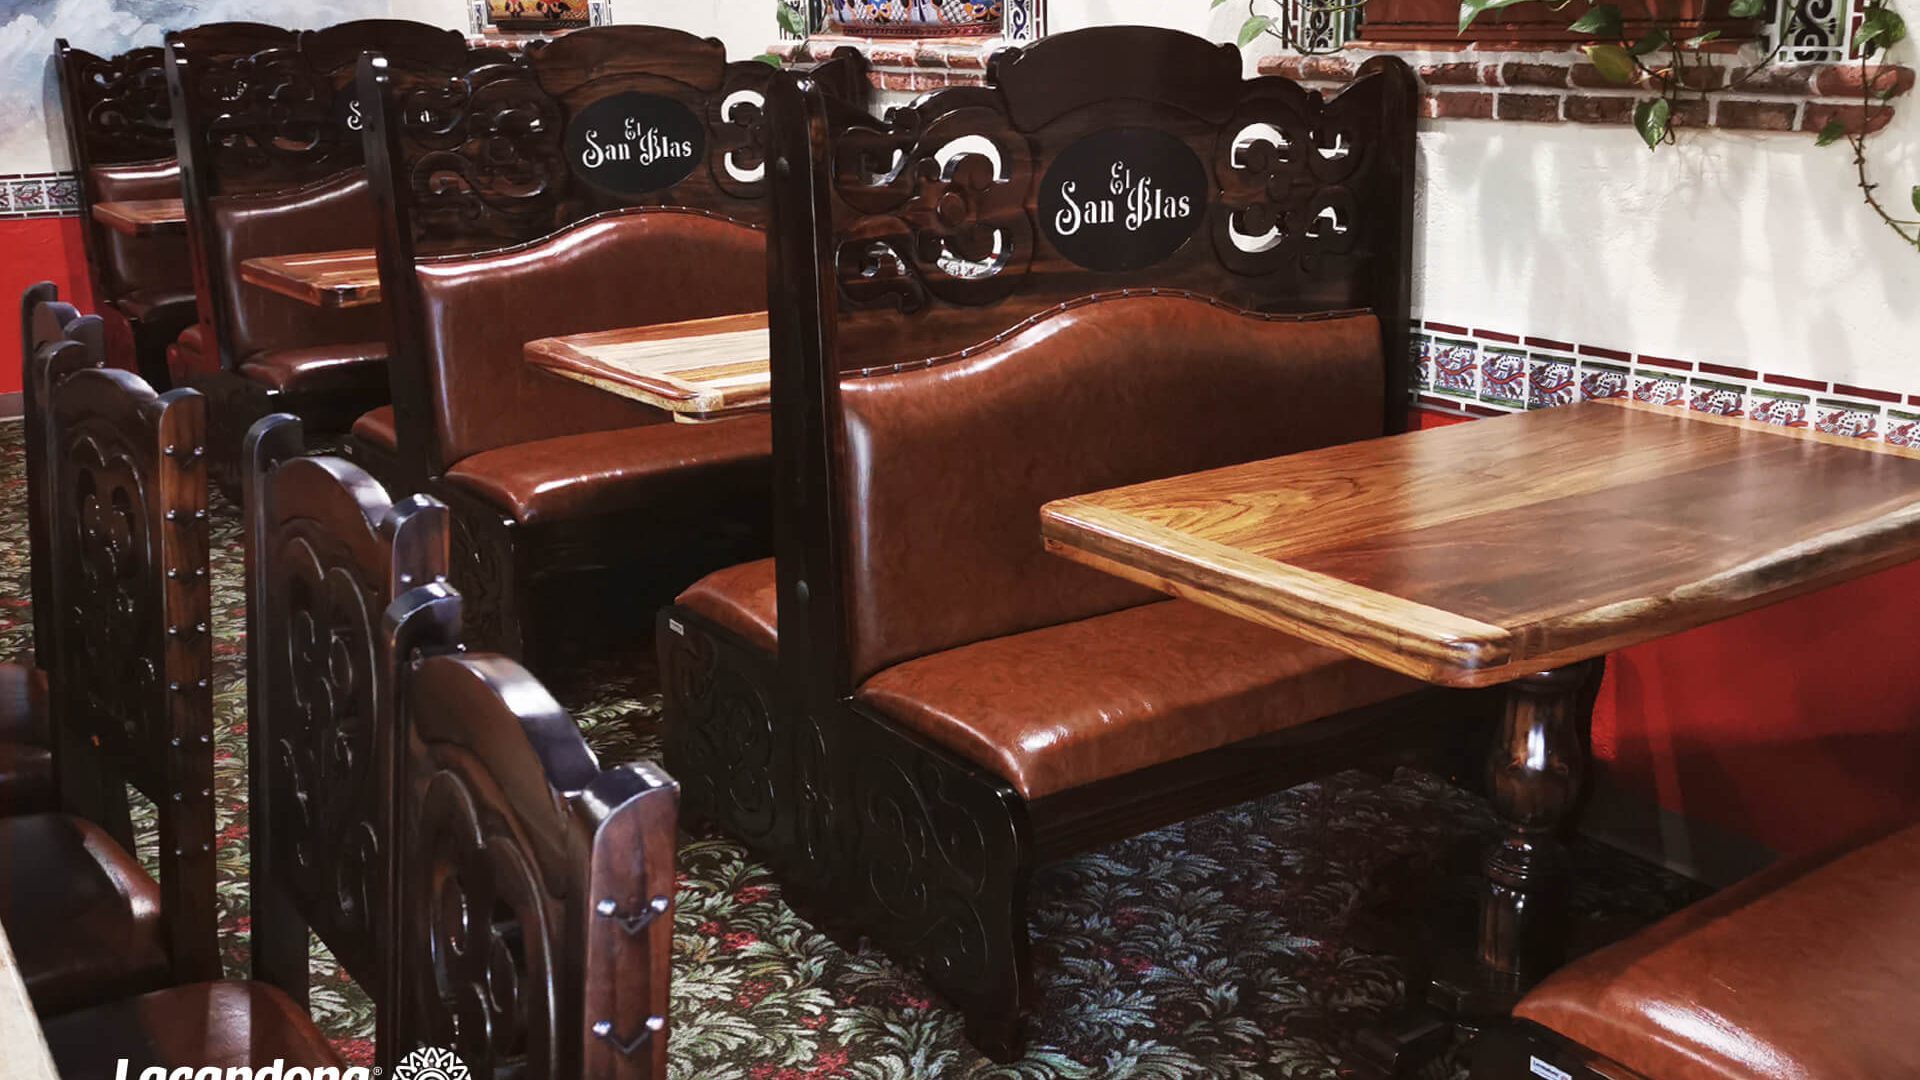 San Blas Restaurante | Muebles Lacandona